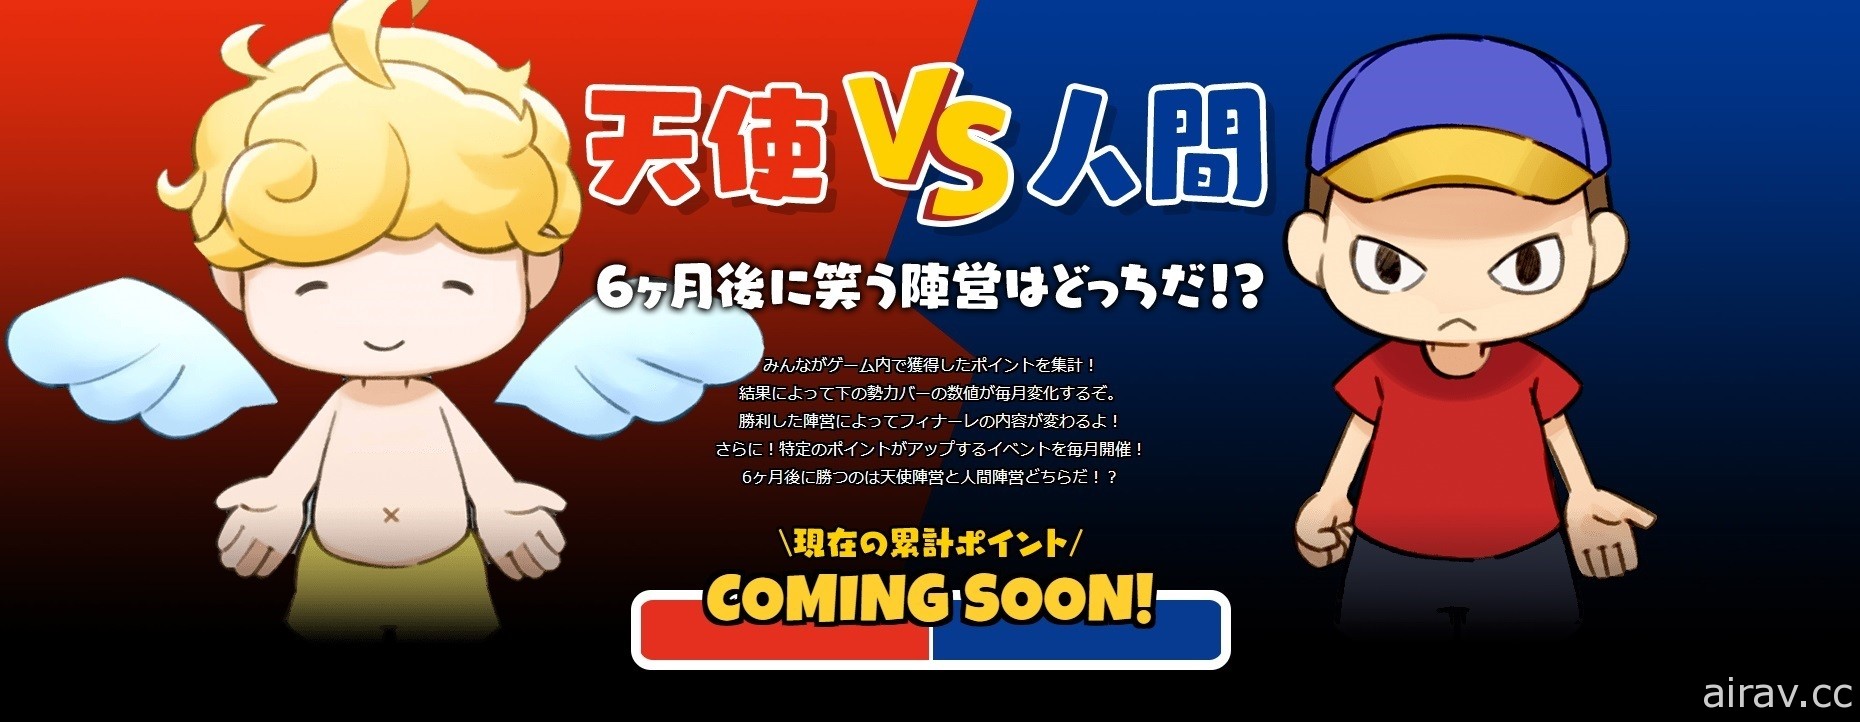 本田翼製作非對稱對戰遊戲《Nyorokko》於日本上市 天使與人類的生存大戰登場